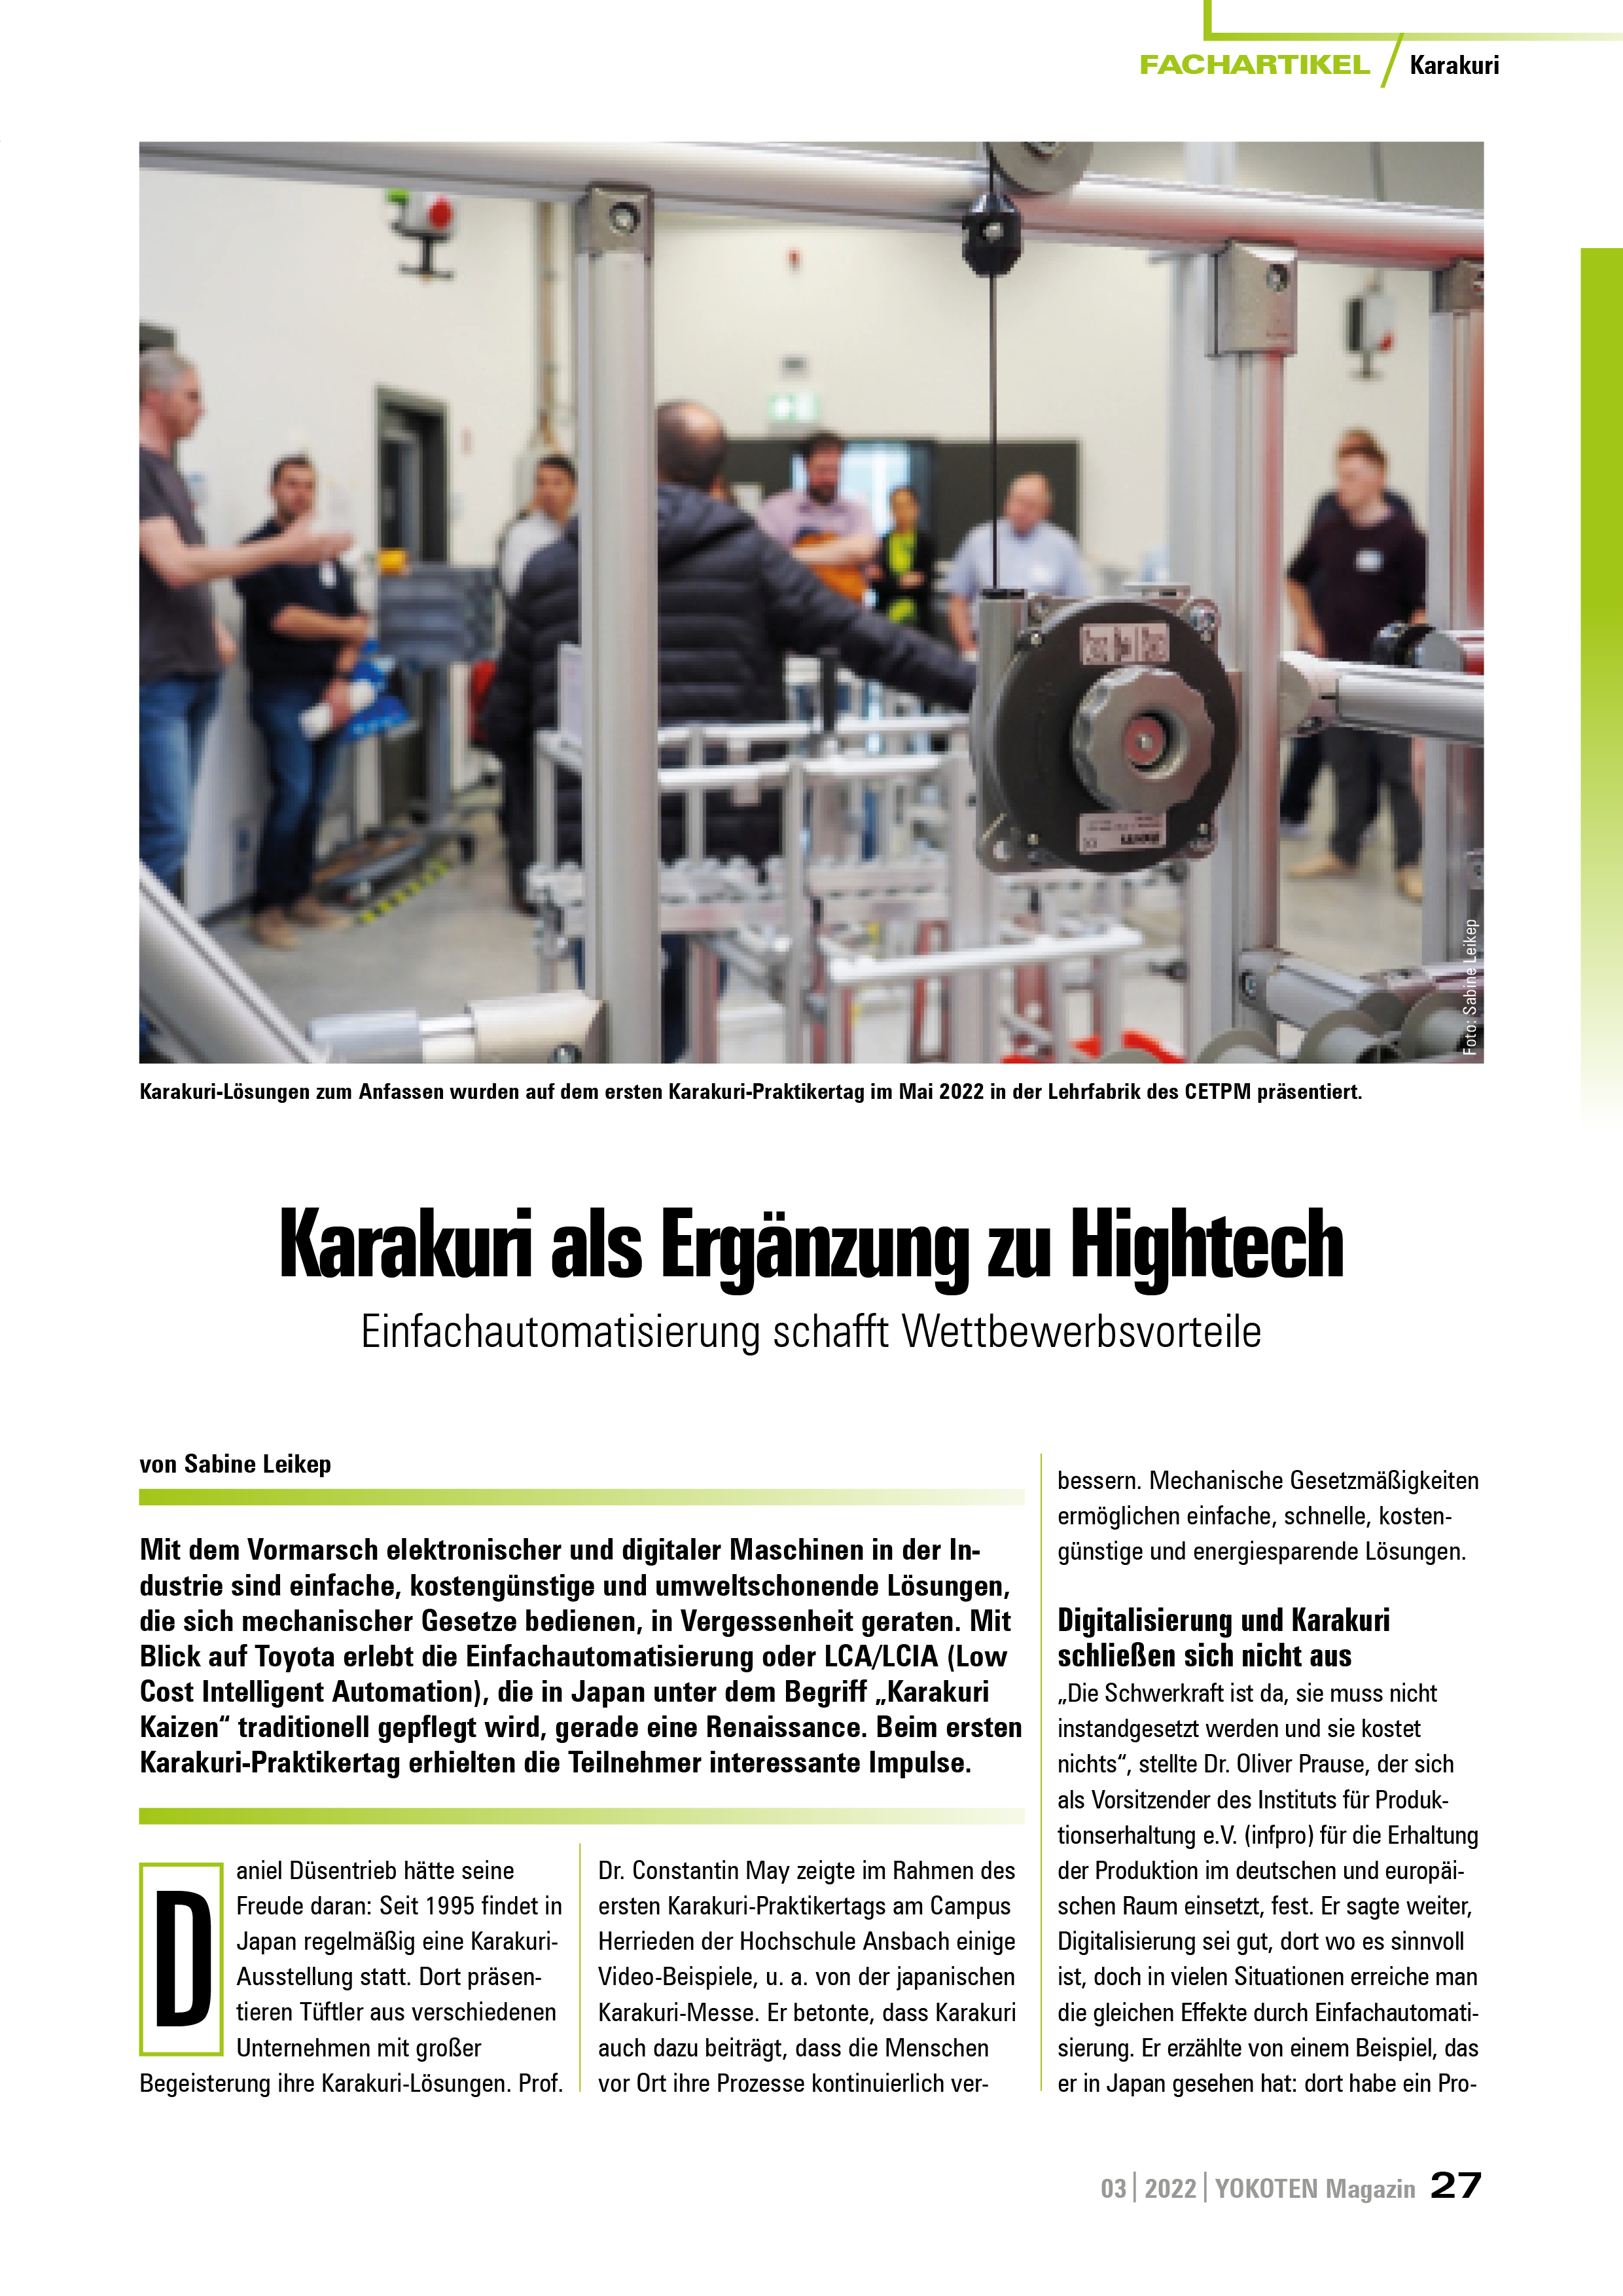 Karakuri als Ergänzung zu Hightech - Artikel aus Fachmagazin YOKOTEN 2022-03